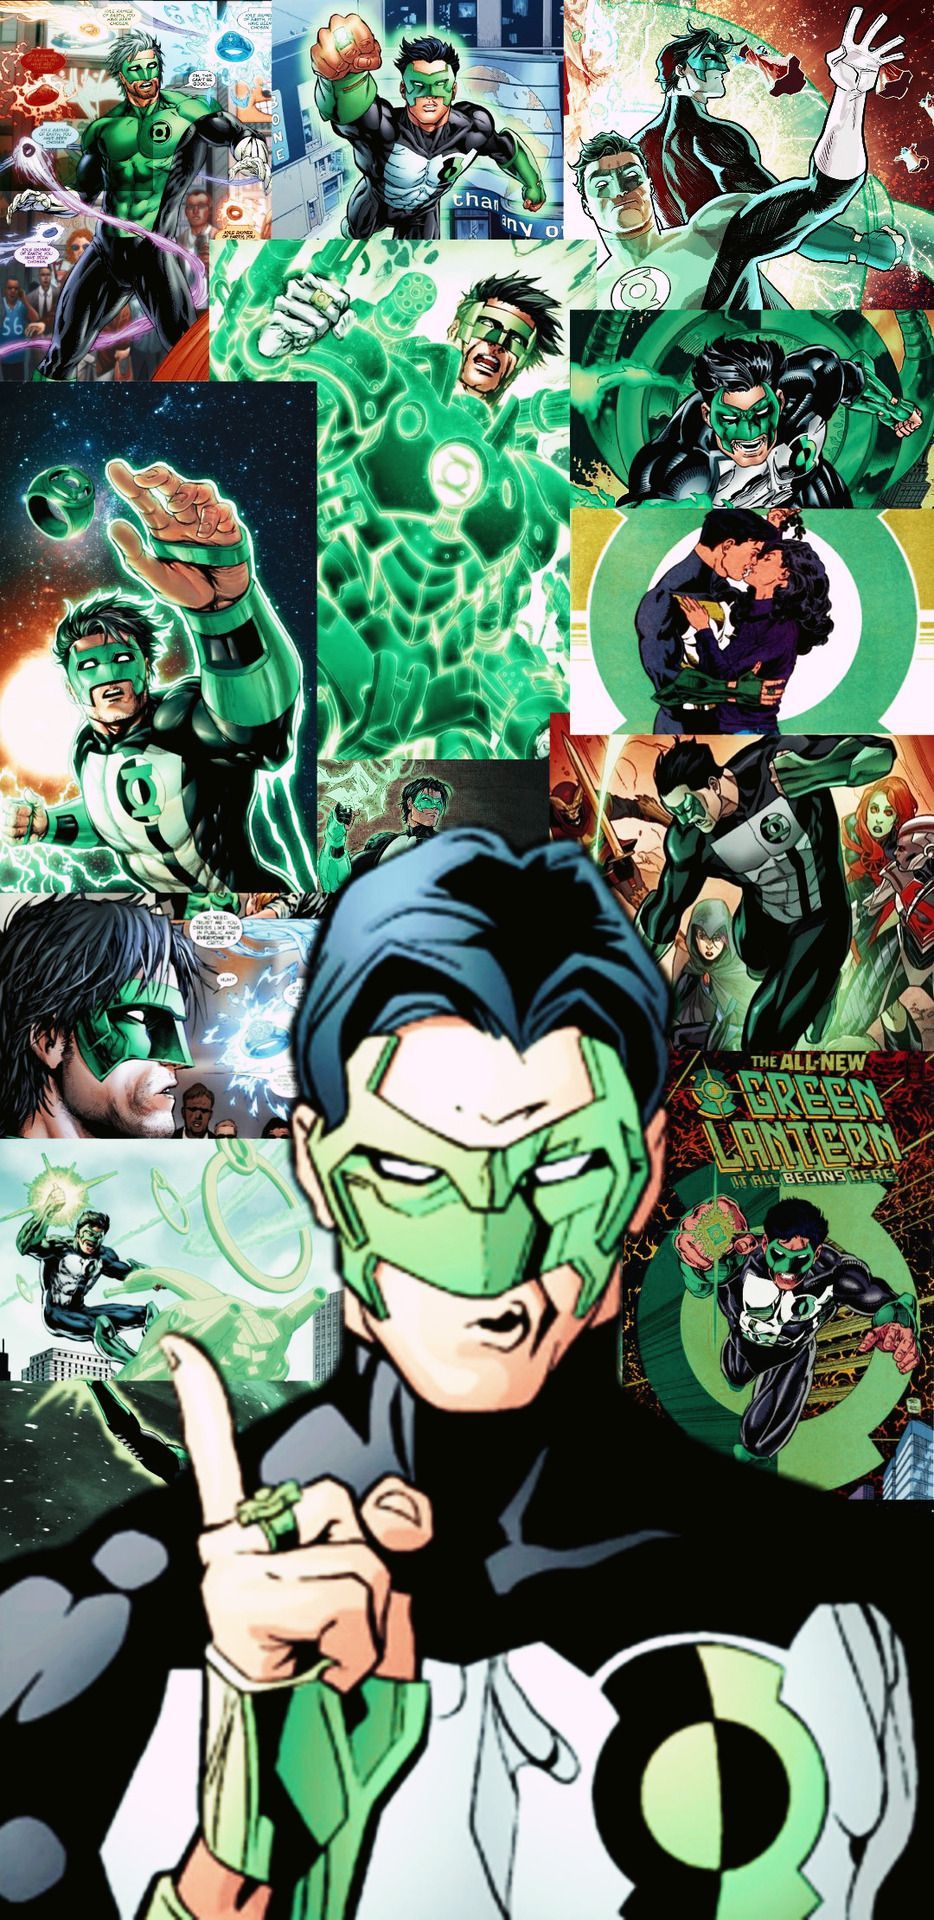 Green Lantern Corps Phone Wallpaper: Kyle Rayner. Green lantern wallpaper, Green lantern corps, Green lantern